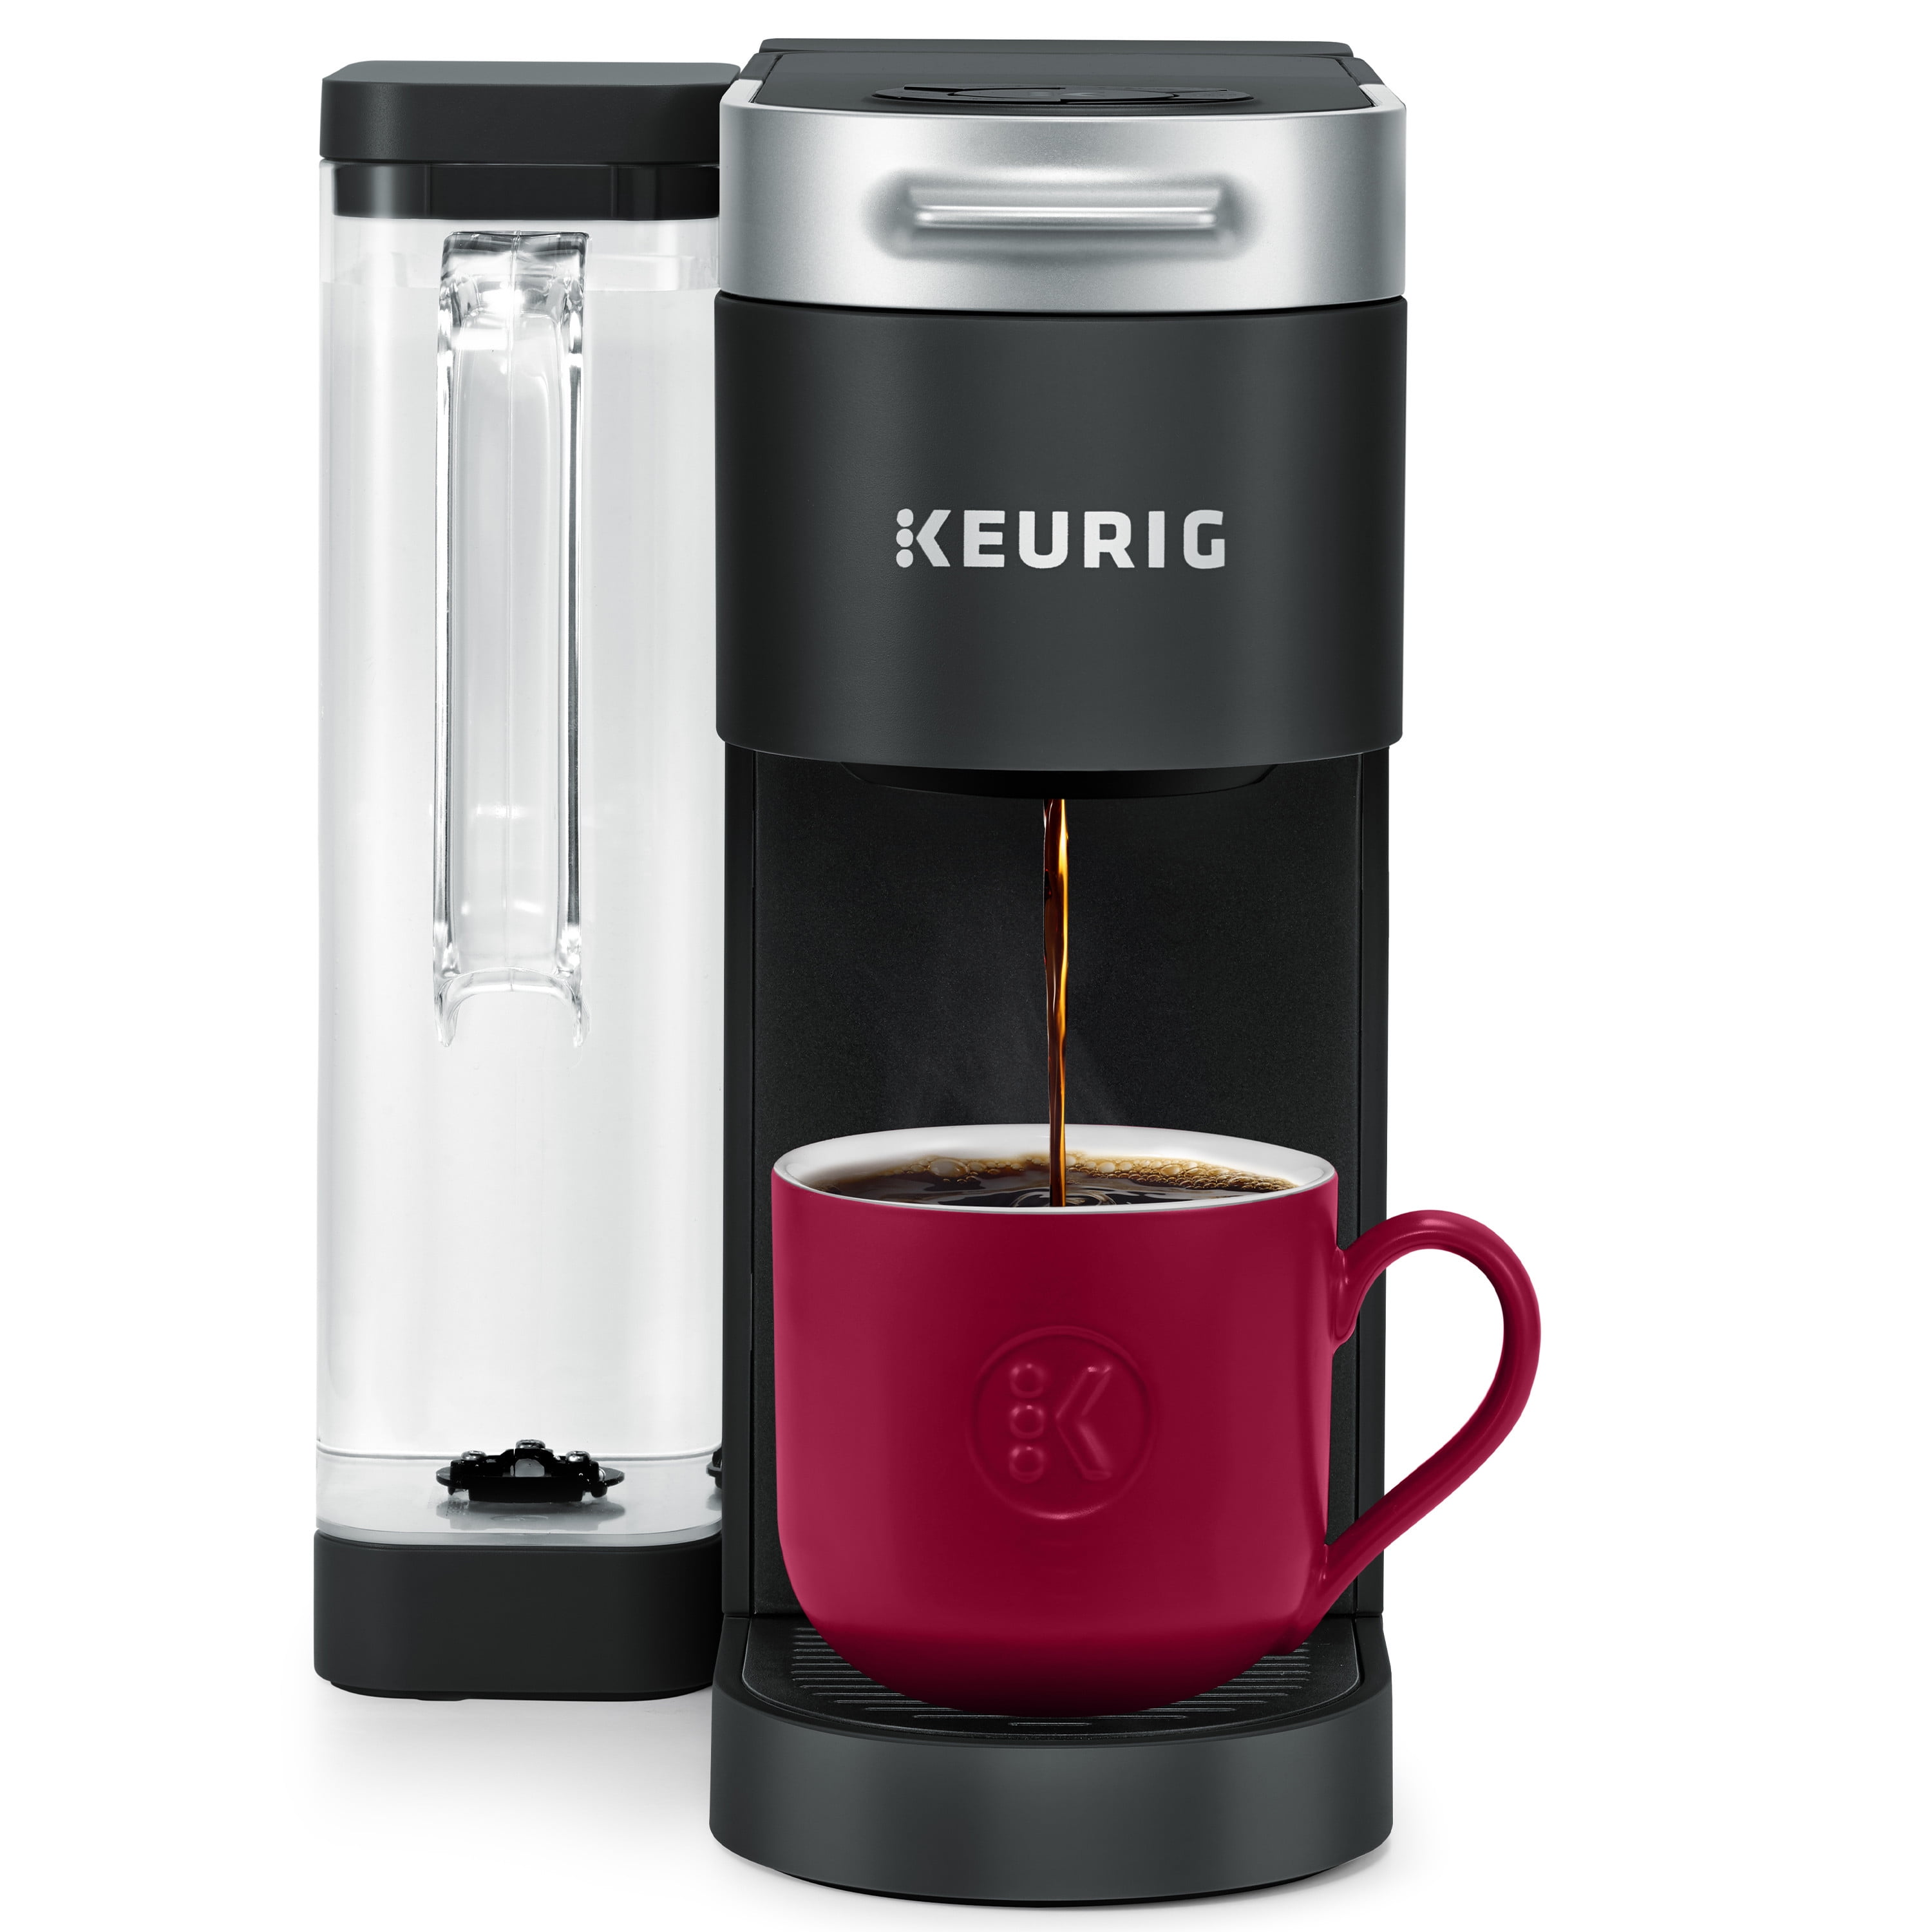 Keurig K200 Plus Single-Serve K-Cup Coffee Maker TURQUOISE Brand New akin K250 